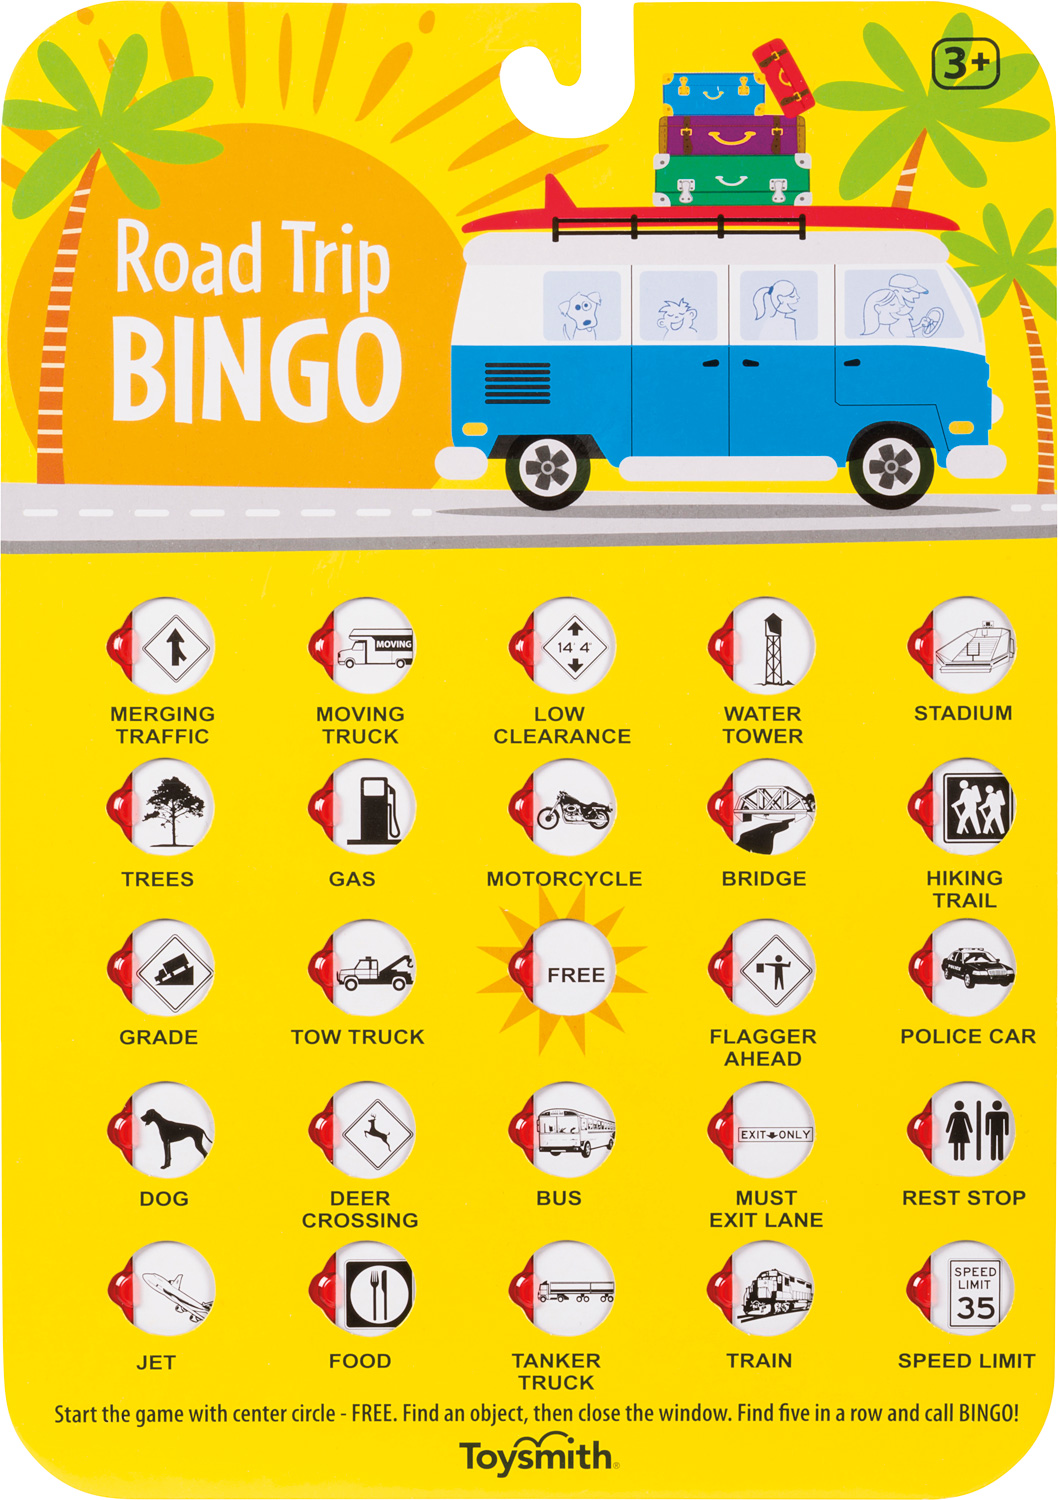 En oferta - Road Trip Bingo para niños – Lieber's Luggage